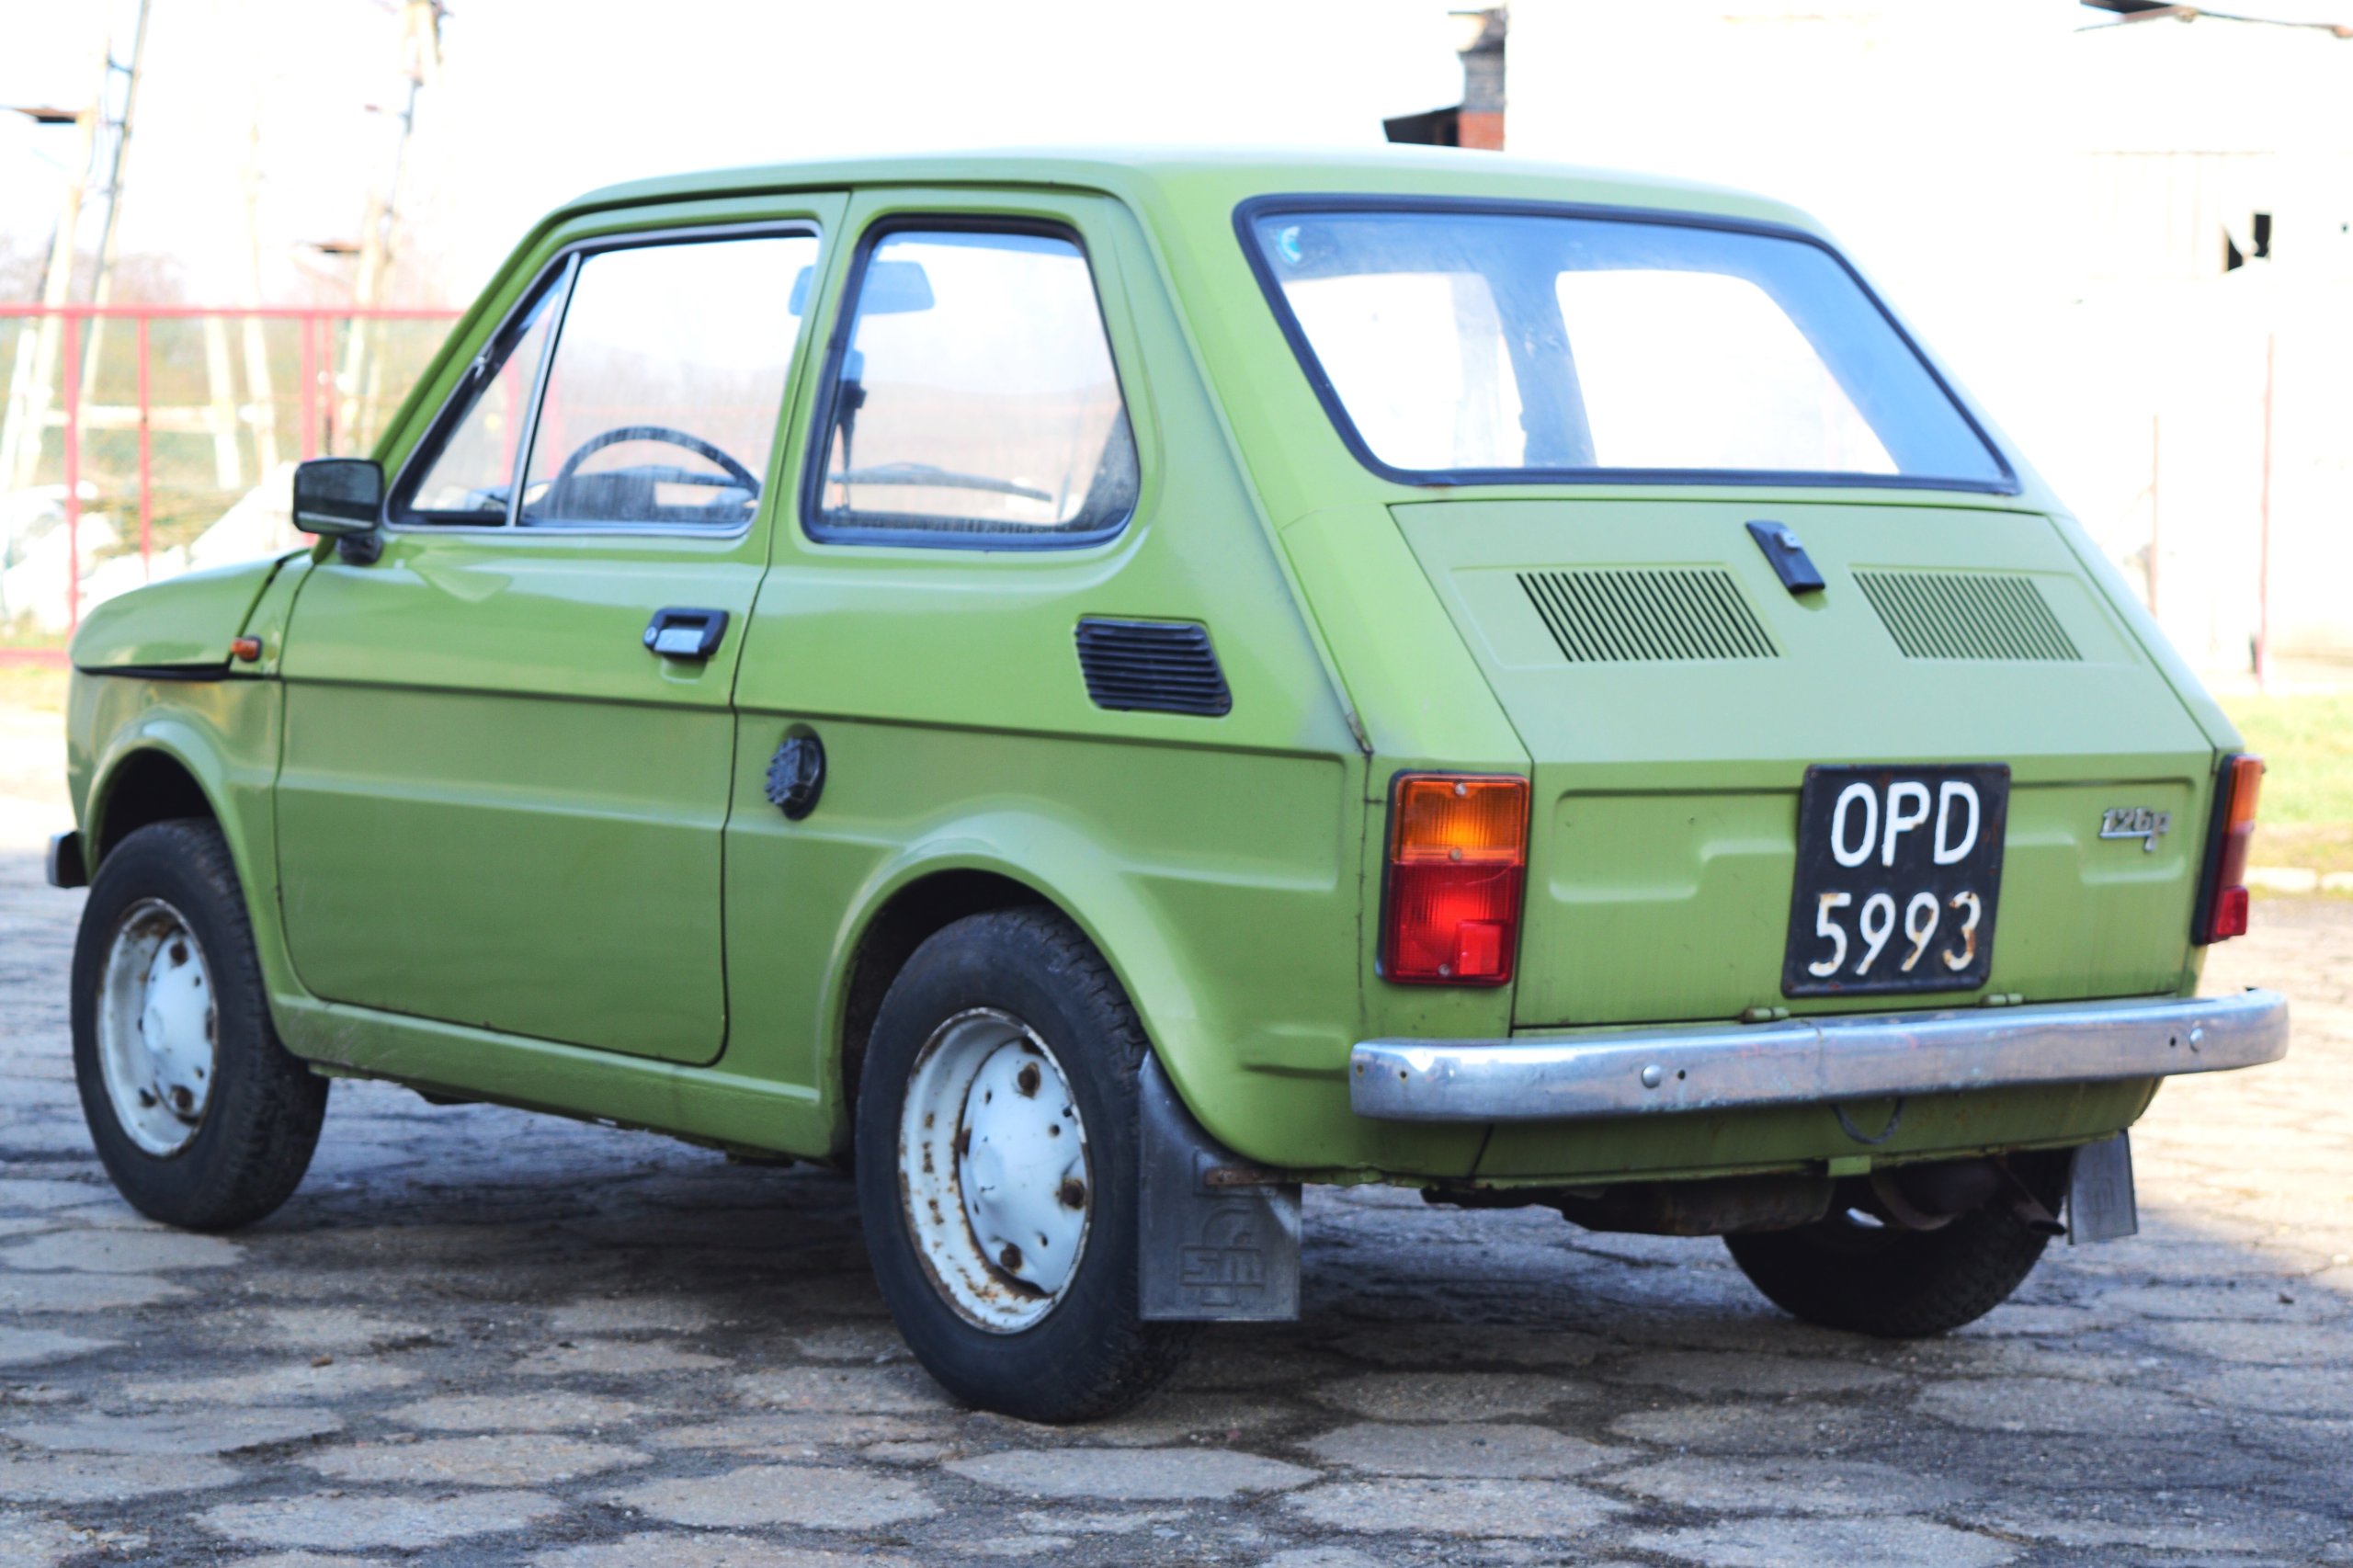 Fiat 126 P Maluch 1979 r 7107408595 oficjalne archiwum